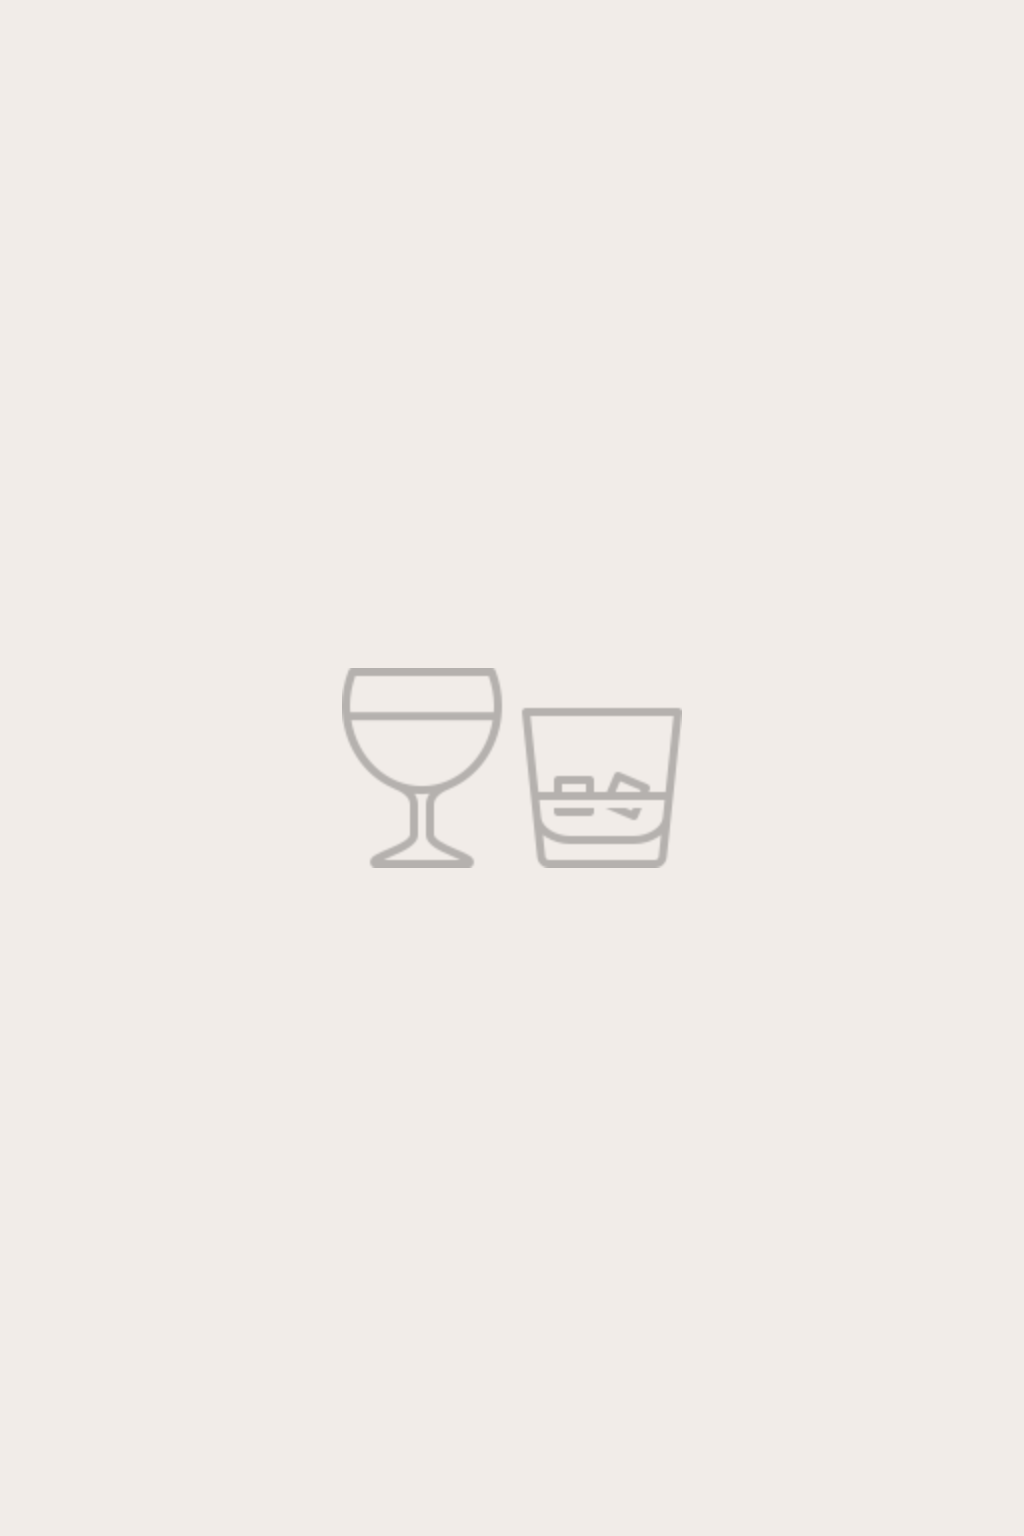 Foursquare Rum “Covenant”